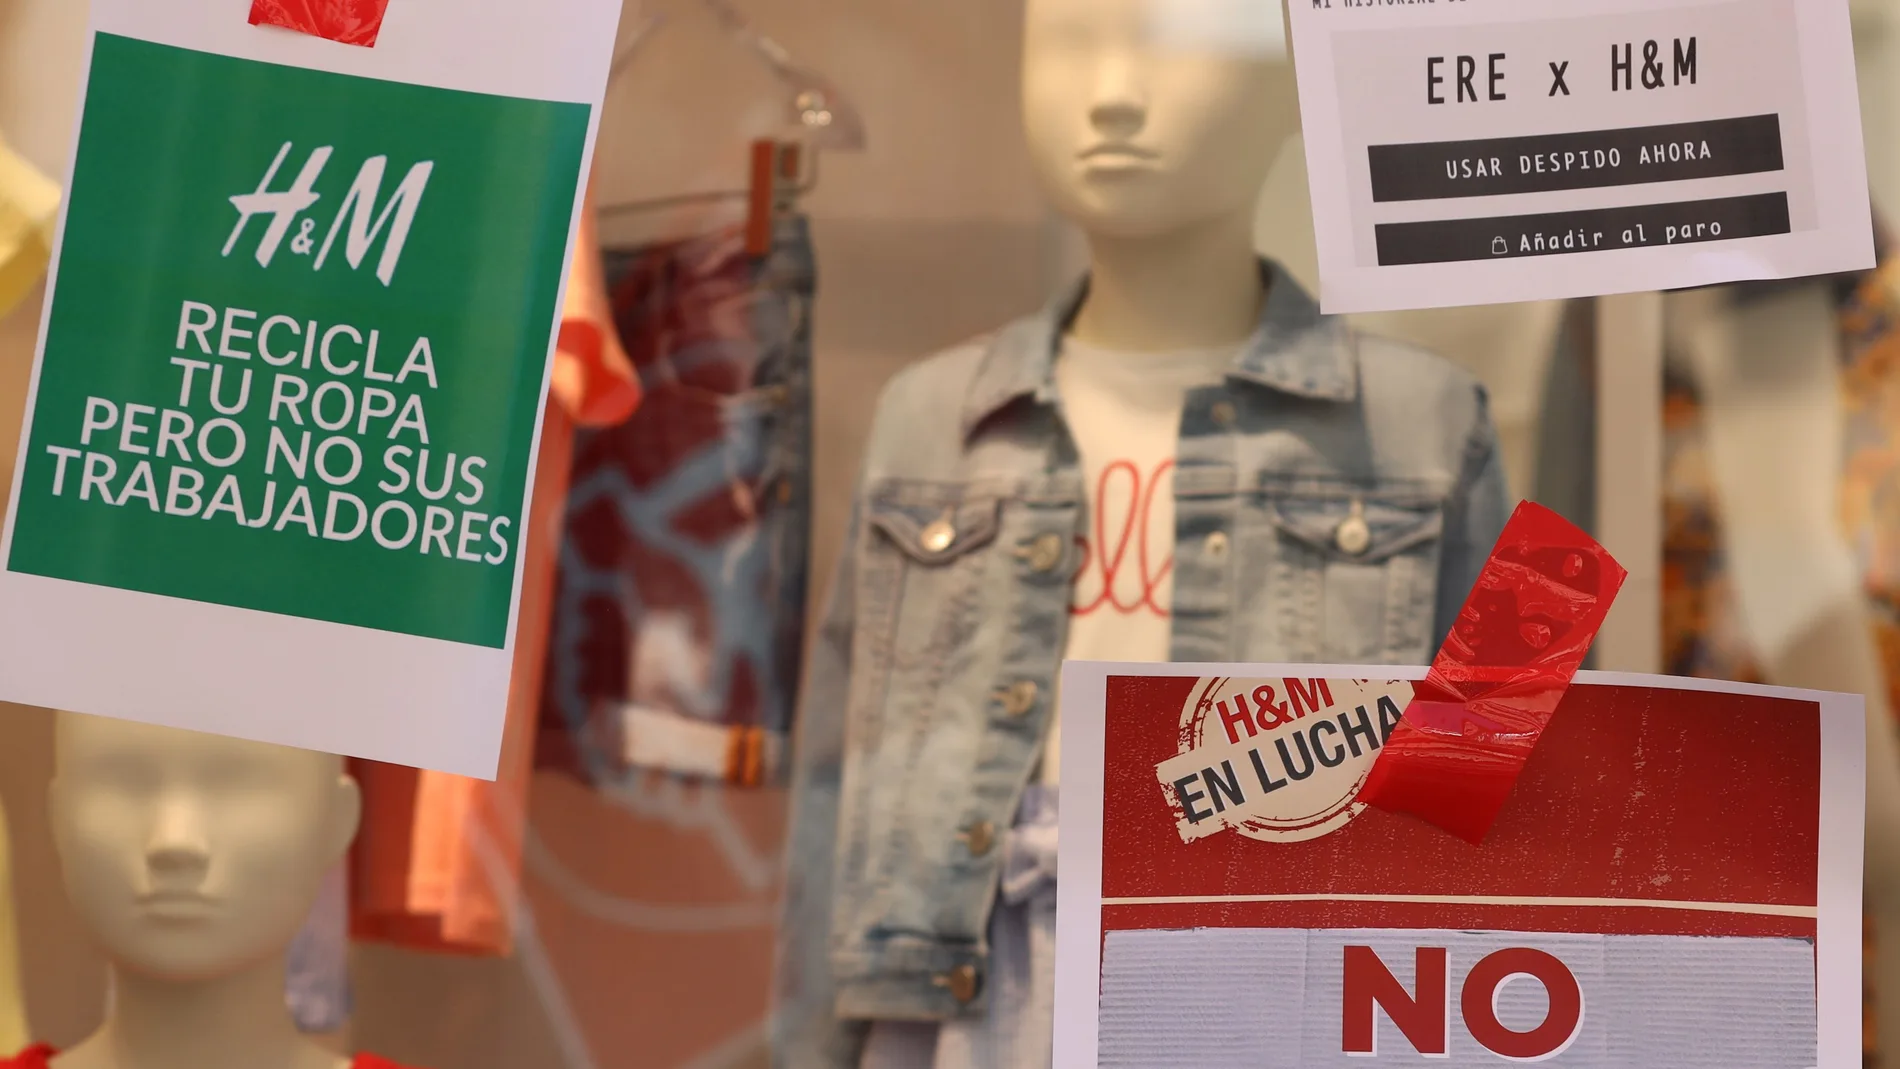 Los sindicatos UGT y CCOO de Salamanca convocaron una concentración de protesta contra el ERE de H&M